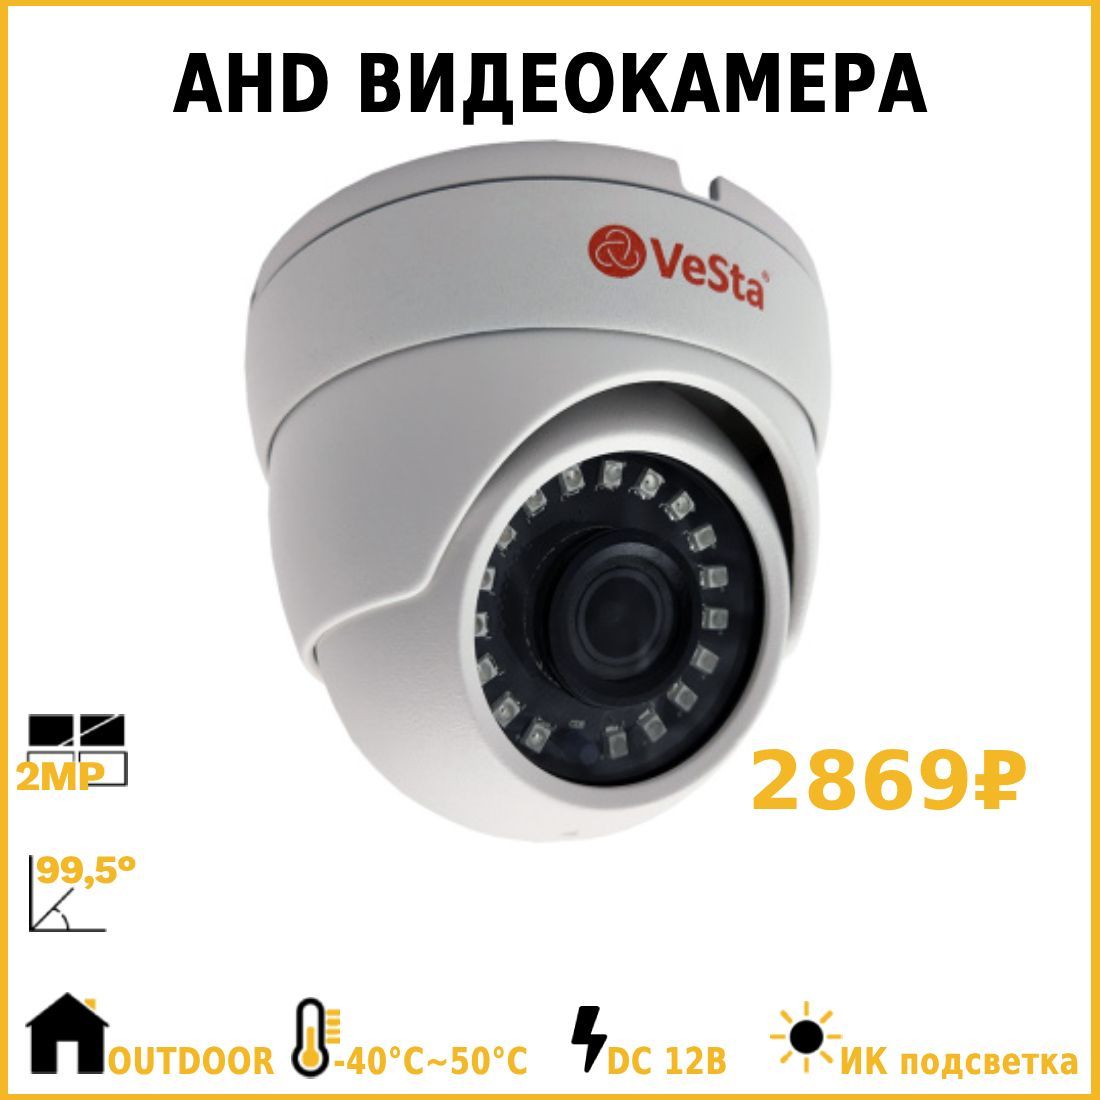 Купить Видеокамеру VC-B421 в Кемерово с доставкой по России